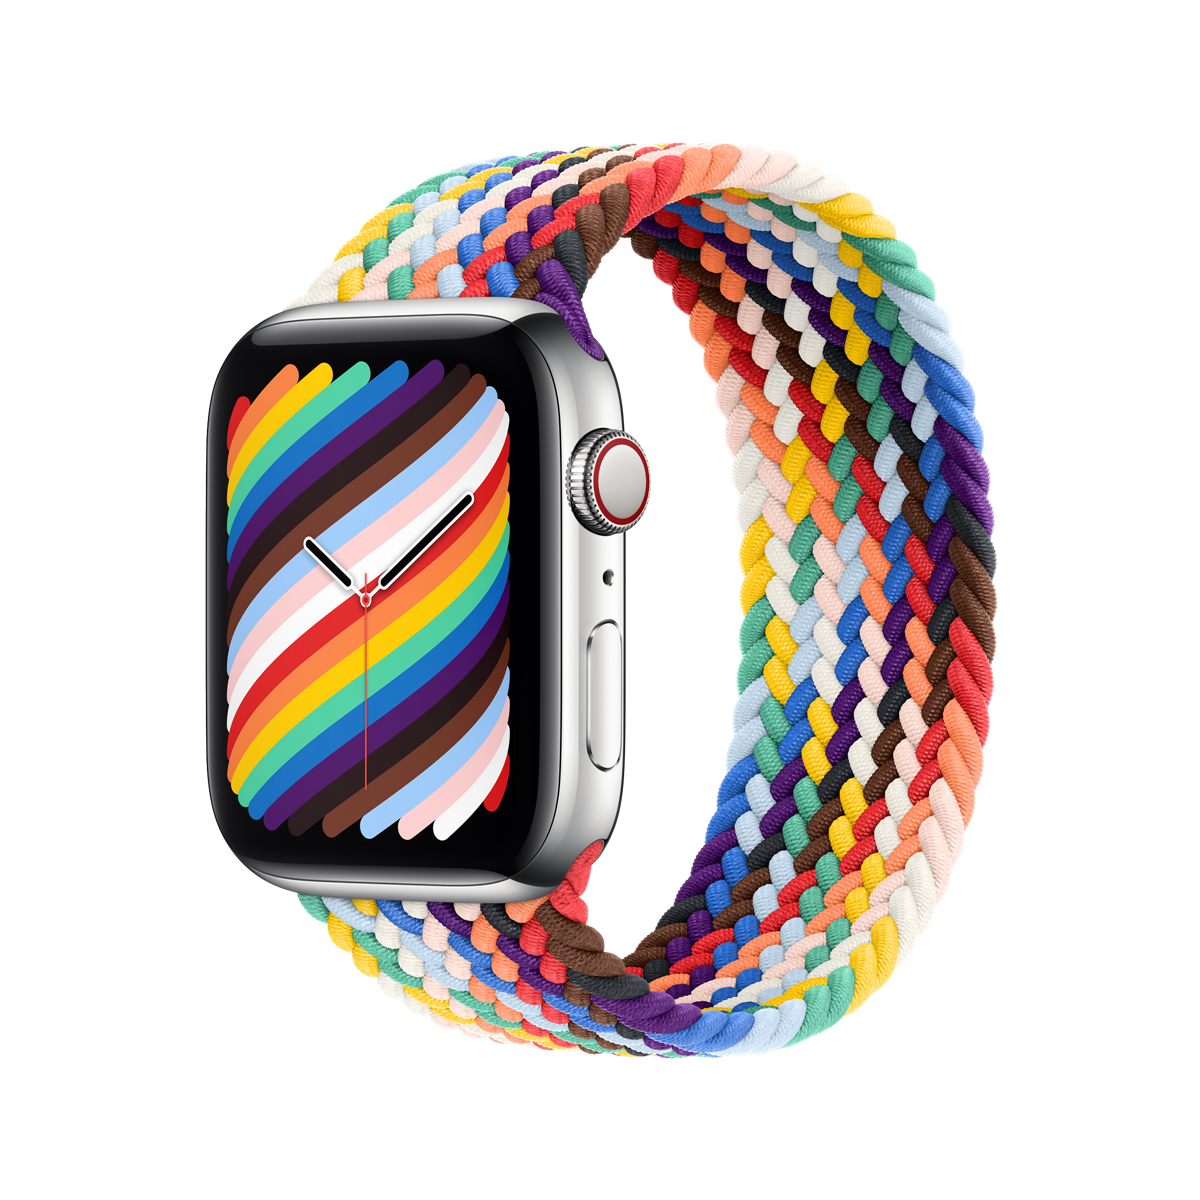 彩虹版單圈編織錶帶來了！Apple Watch 彩虹版錶帶頌揚與支持多元的 LGBTQ+ 運動 全新的編織單圈錶環，呈現出 LGBTQ+ 社群的廣度和經歷 @3C 達人廖阿輝